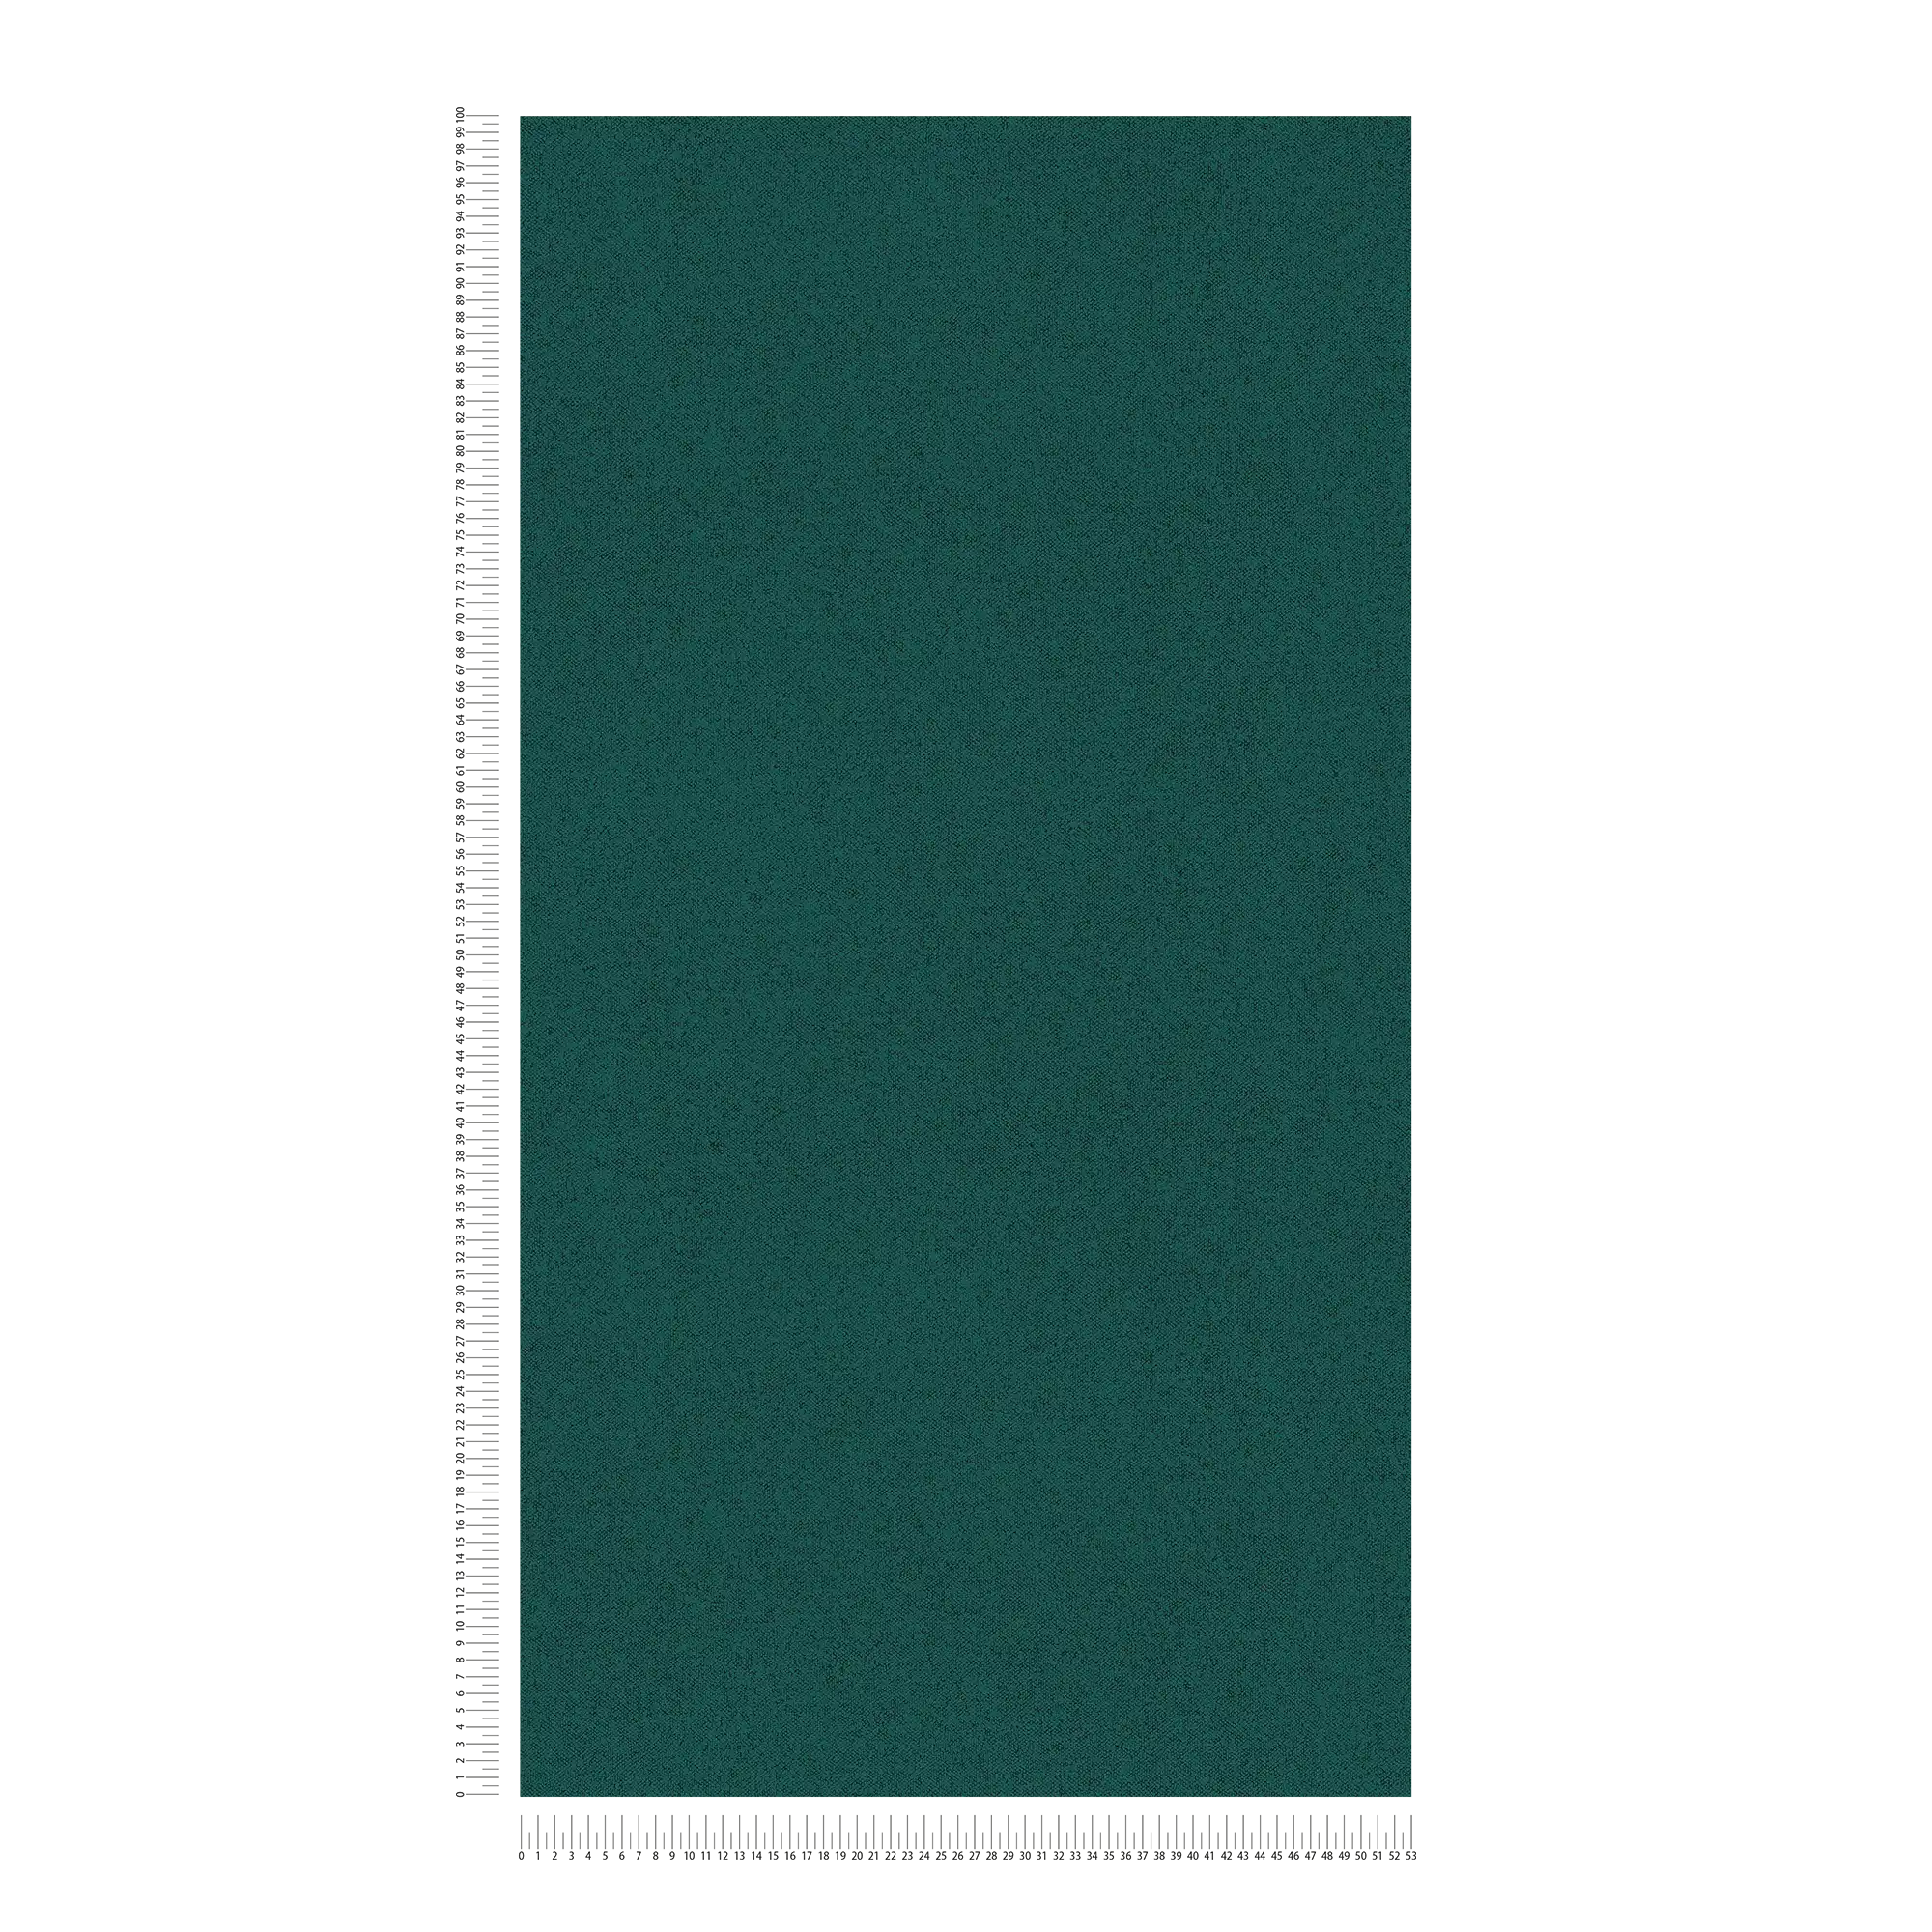             Papier peint structuré uni aspect lin - vert
        